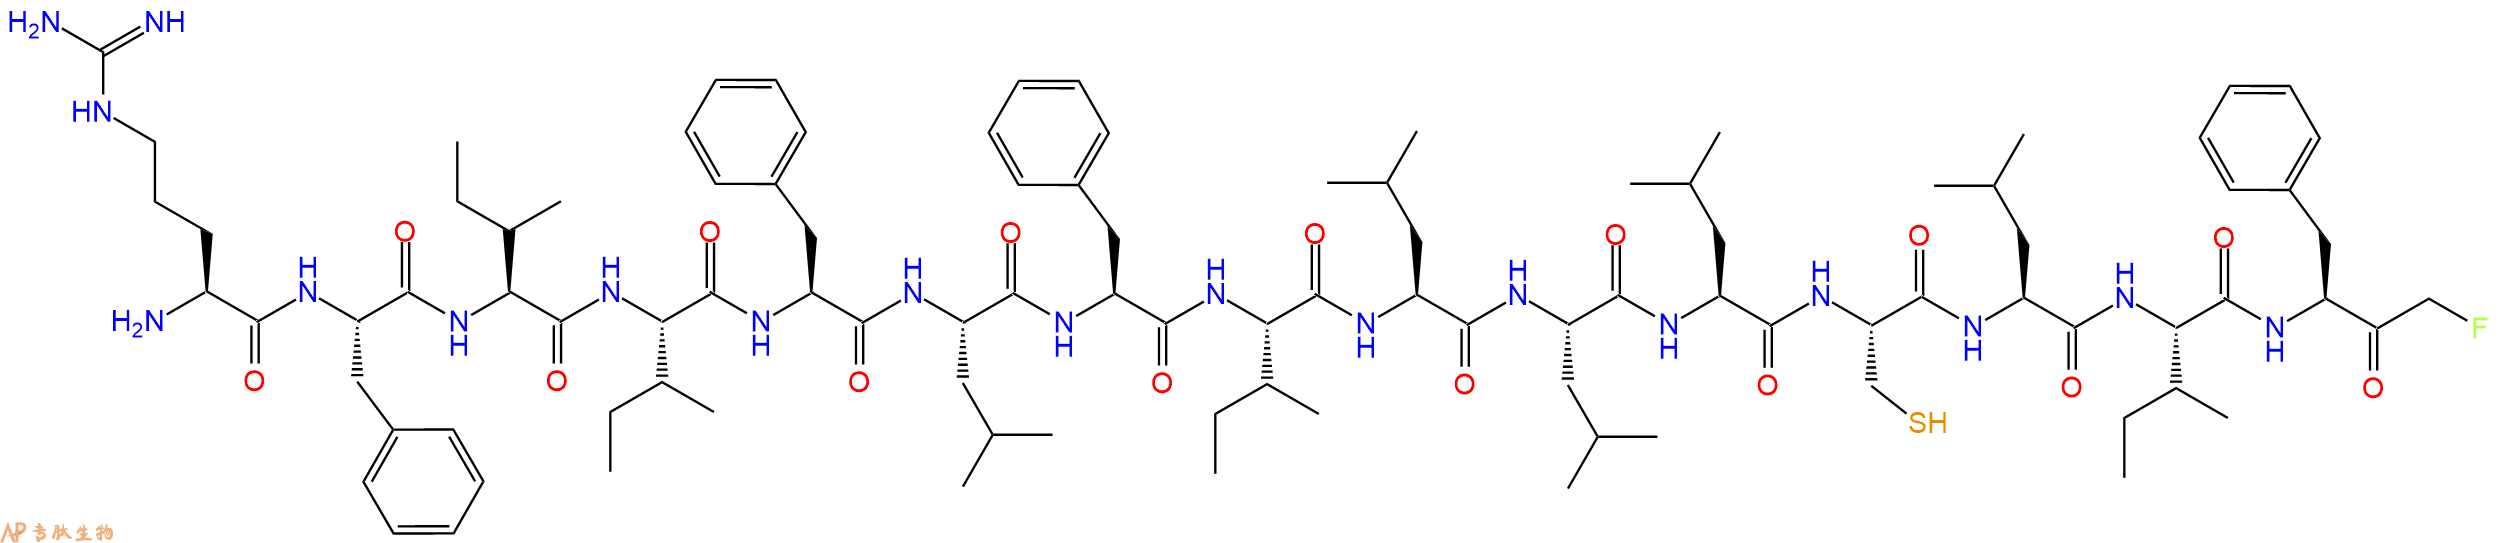 专肽生物产品H2N-Arg-Phe-Ile-Ile-Phe-Leu-Phe-Ile-Leu-Leu-Leu-Cy